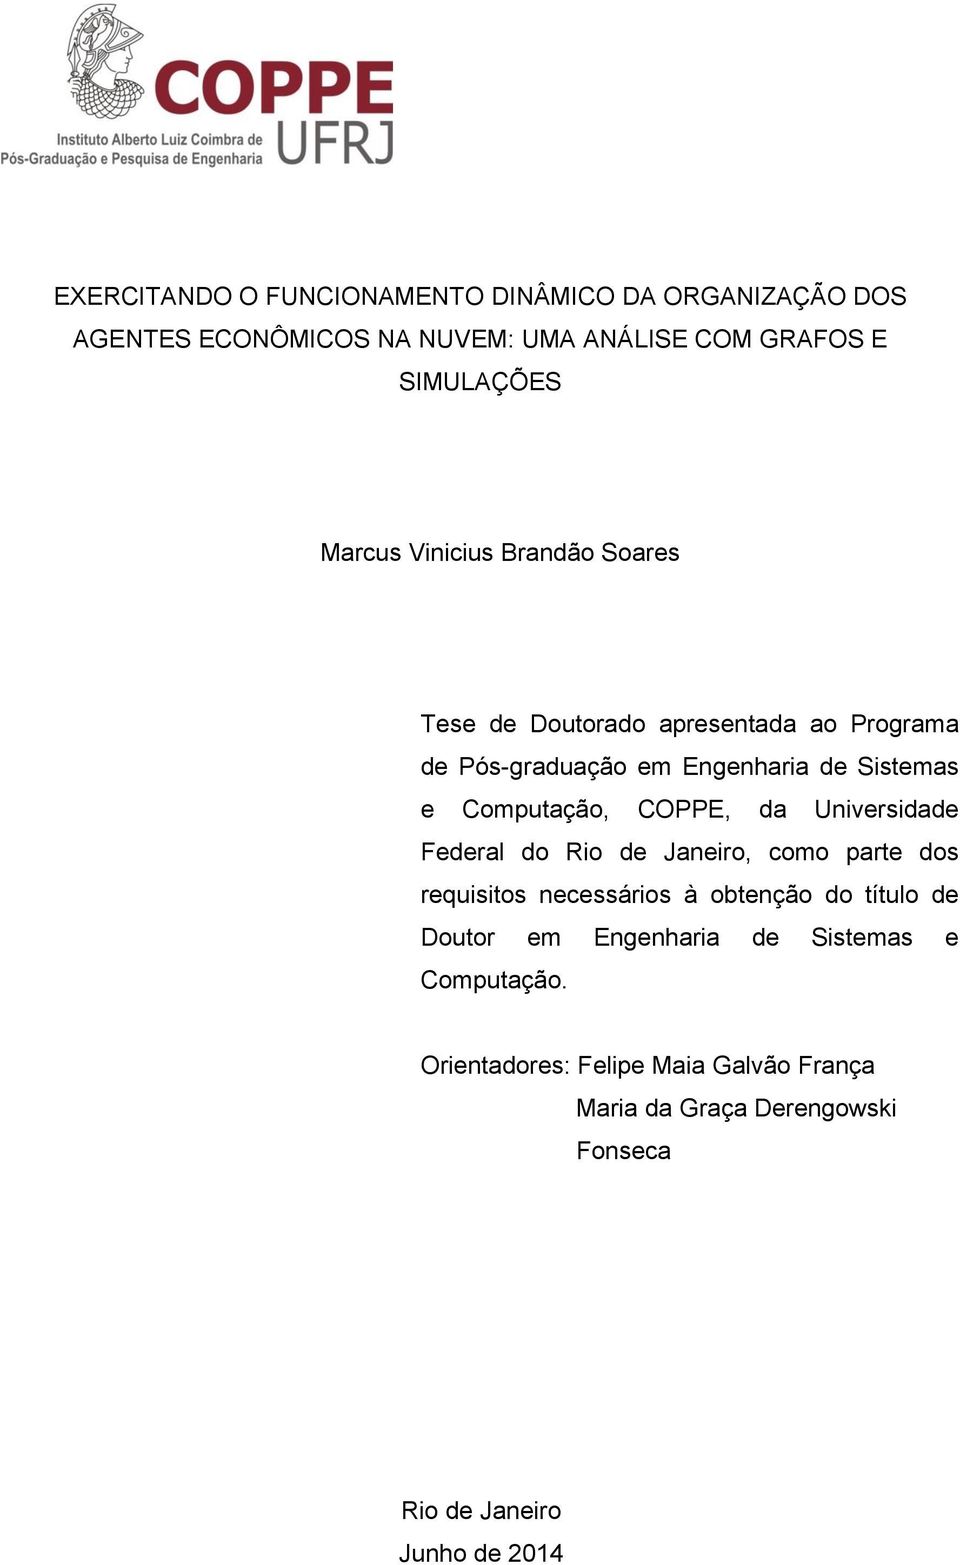 COPPE, da Universidade Federal do Rio de Janeiro, como parte dos requisitos necessários à obtenção do título de Doutor em